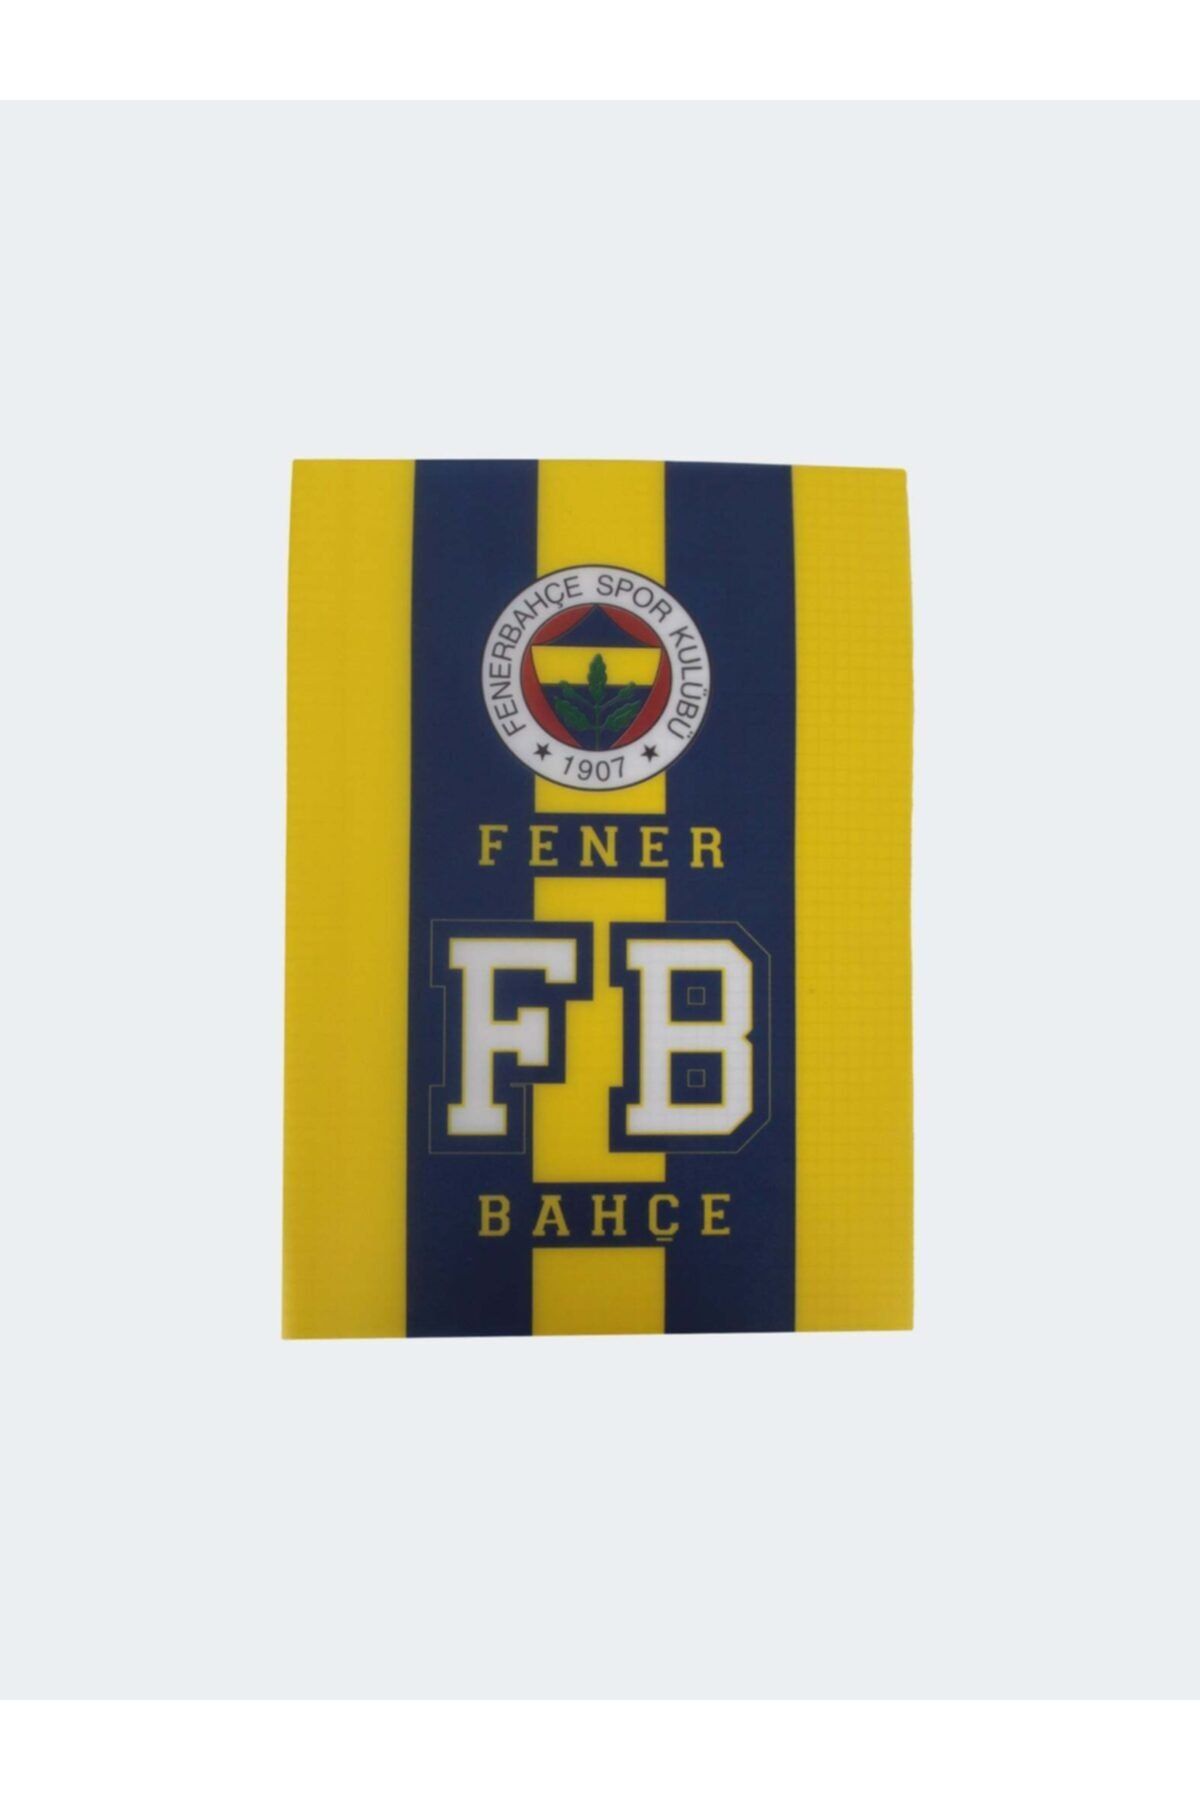 Fenerbahçe Defter Tel Dkş.pp Kap.a-4